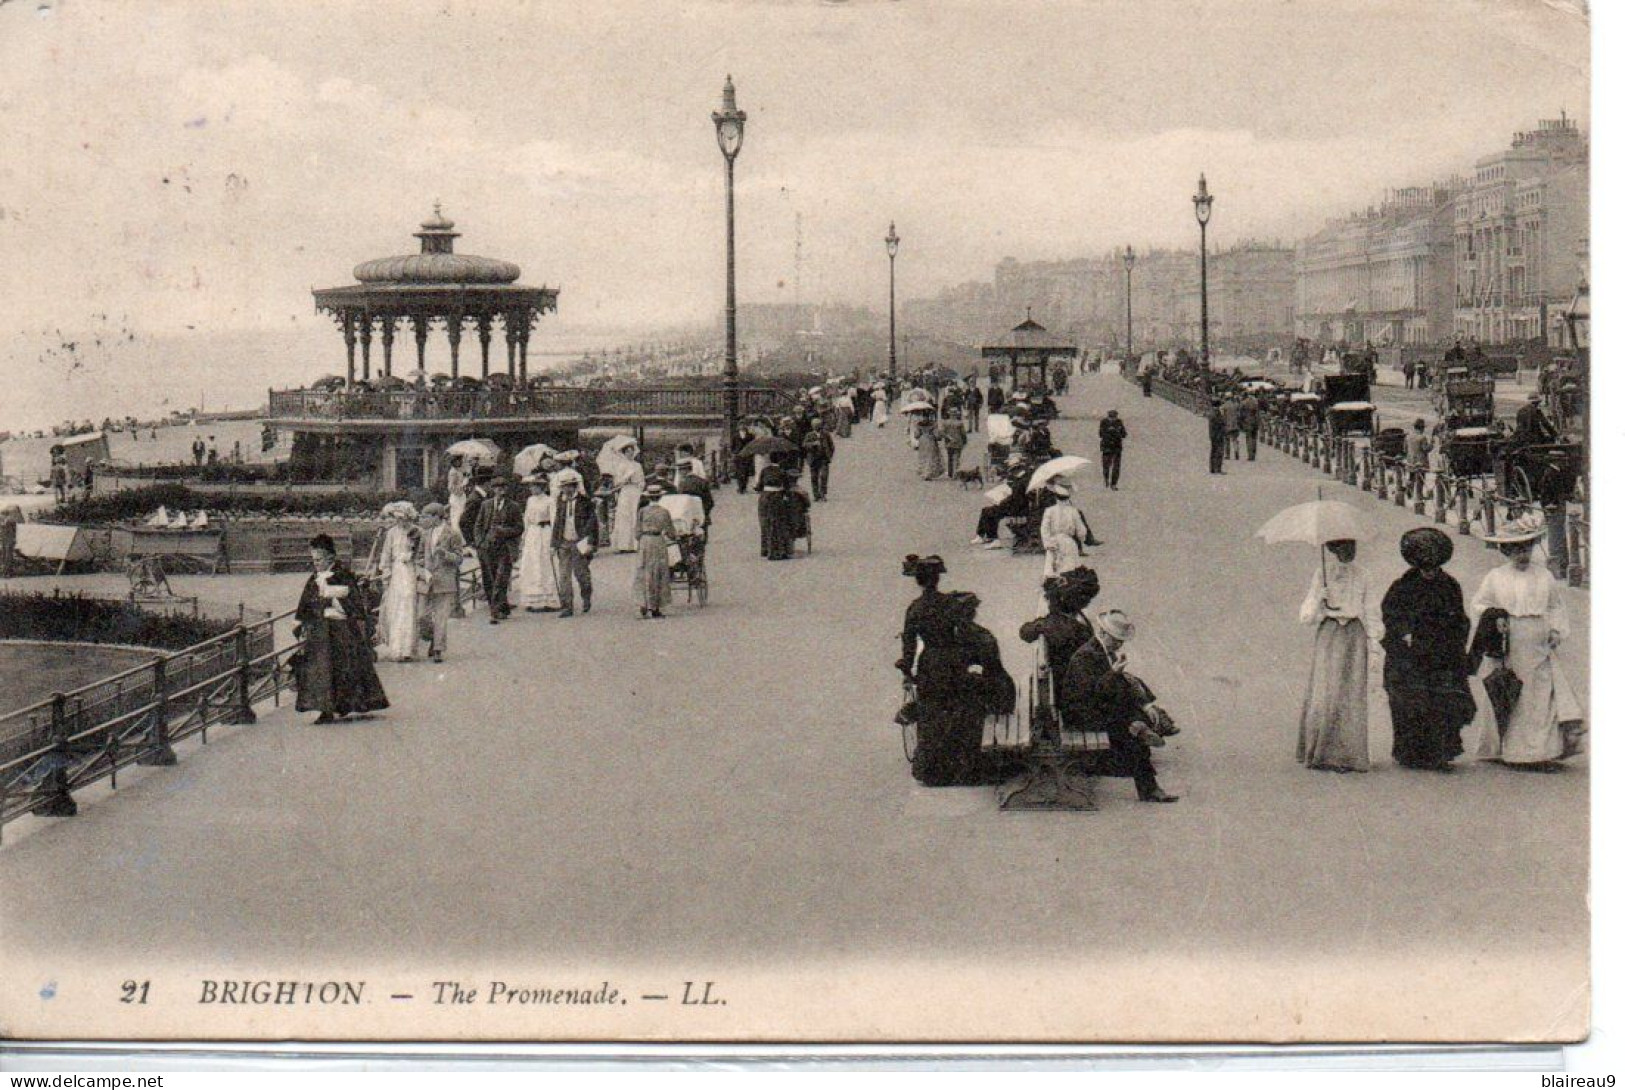 21 The Promenade - Brighton